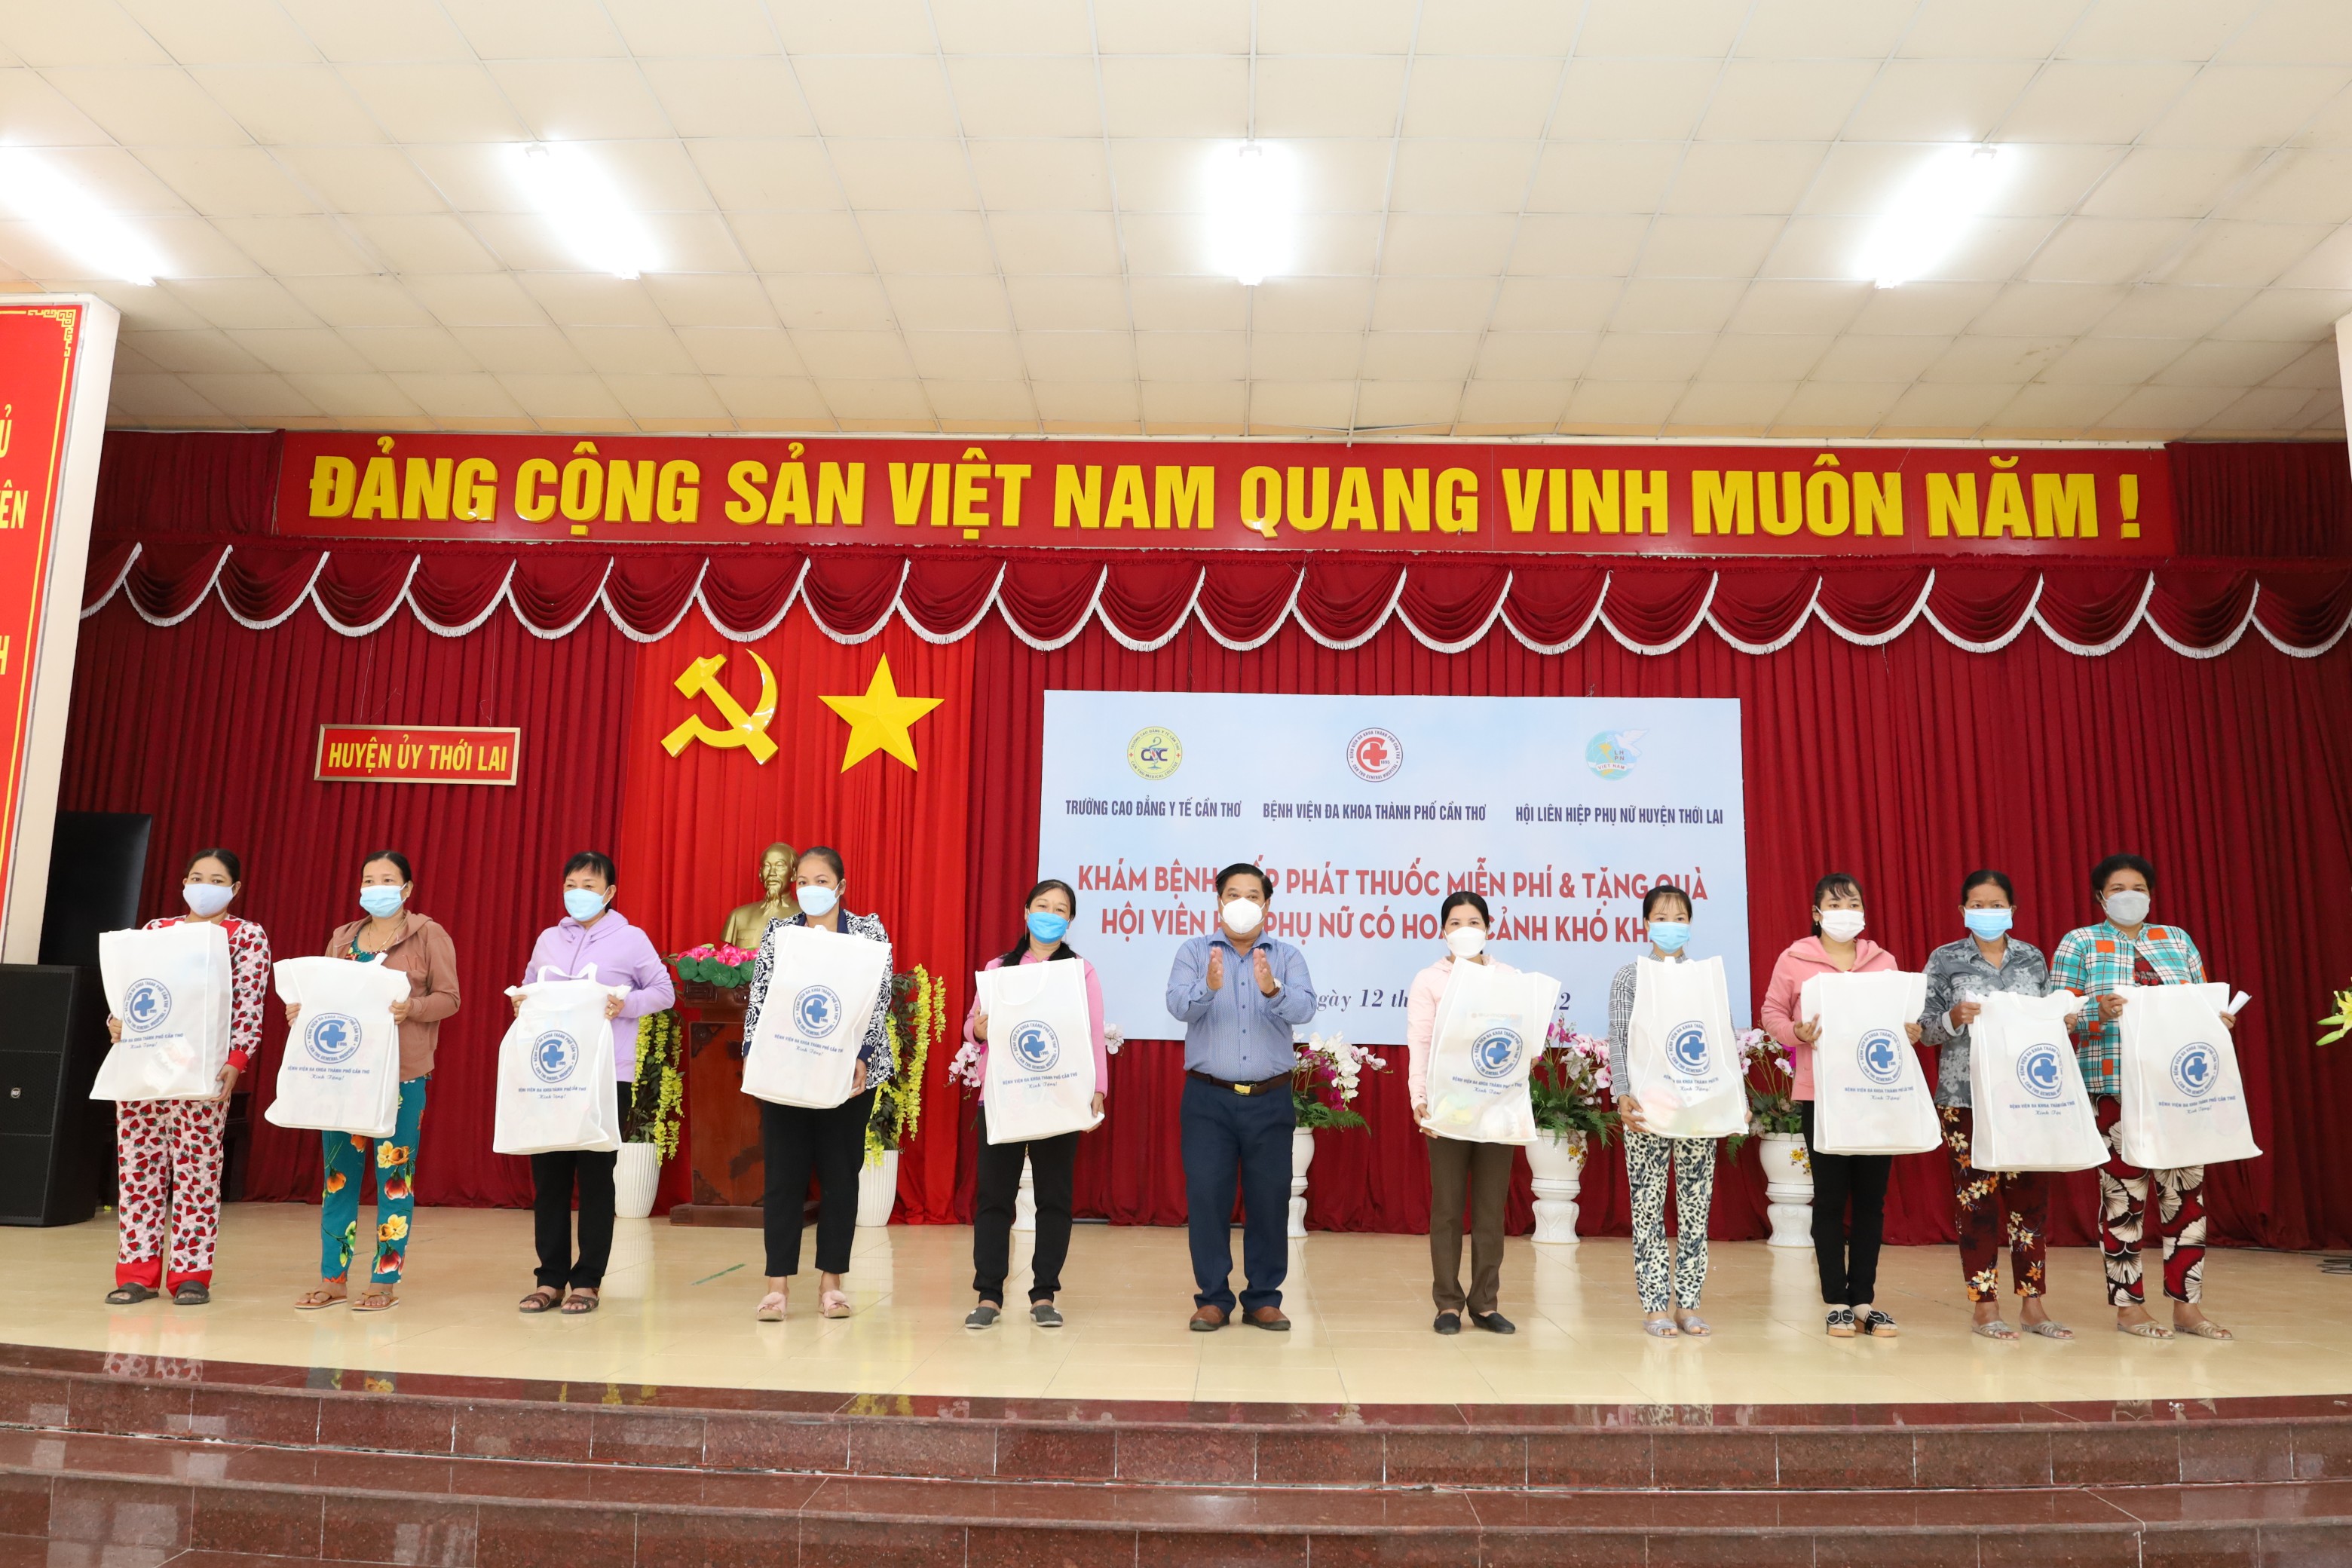 Ông Nguyễn Thành Út – Phó Bí thư Huyện ủy, Chủ tịch UBND huyện Thới Lai trao trặng quà cho người dân.